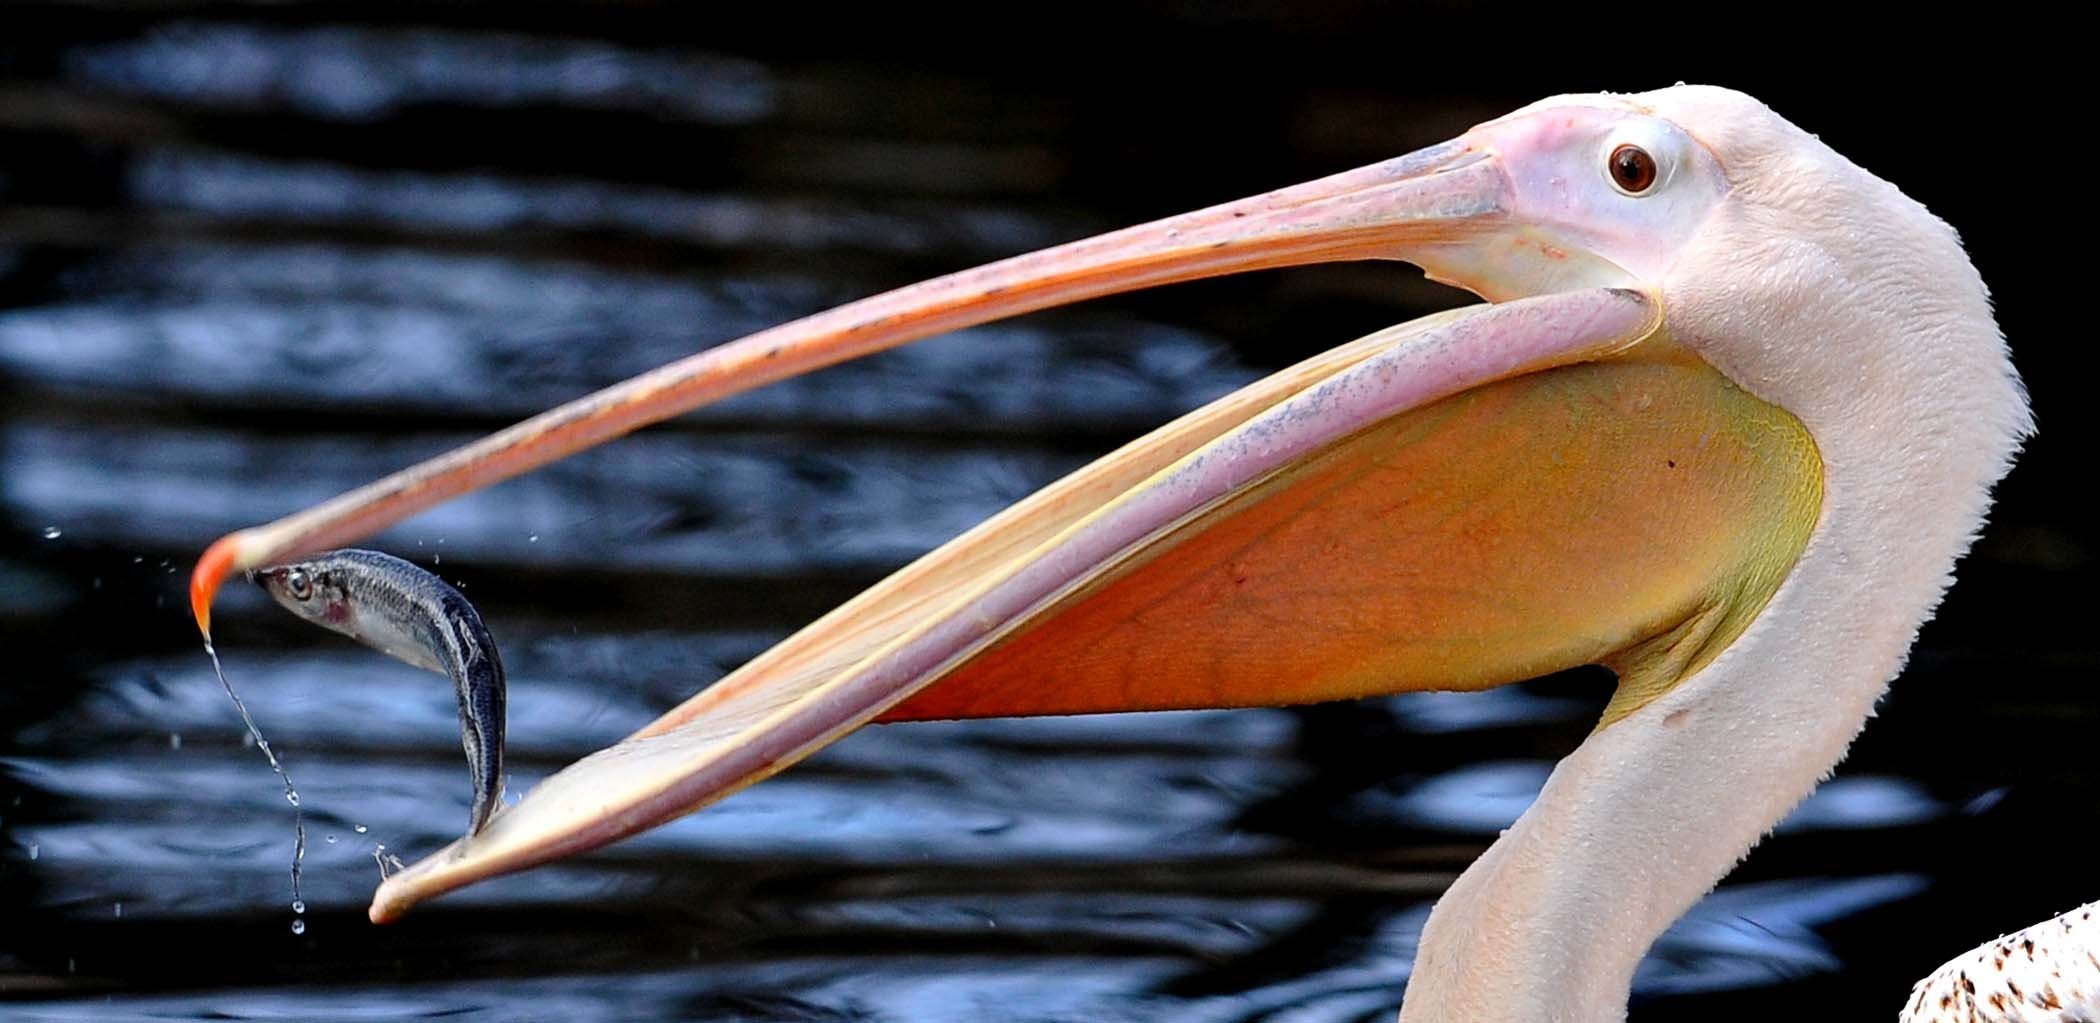 Пеликан ловит рыбу. Розовый Пеликан птица. Клюв пеликана. Пеликан питается рыбой. Пеликаны Бабуры.